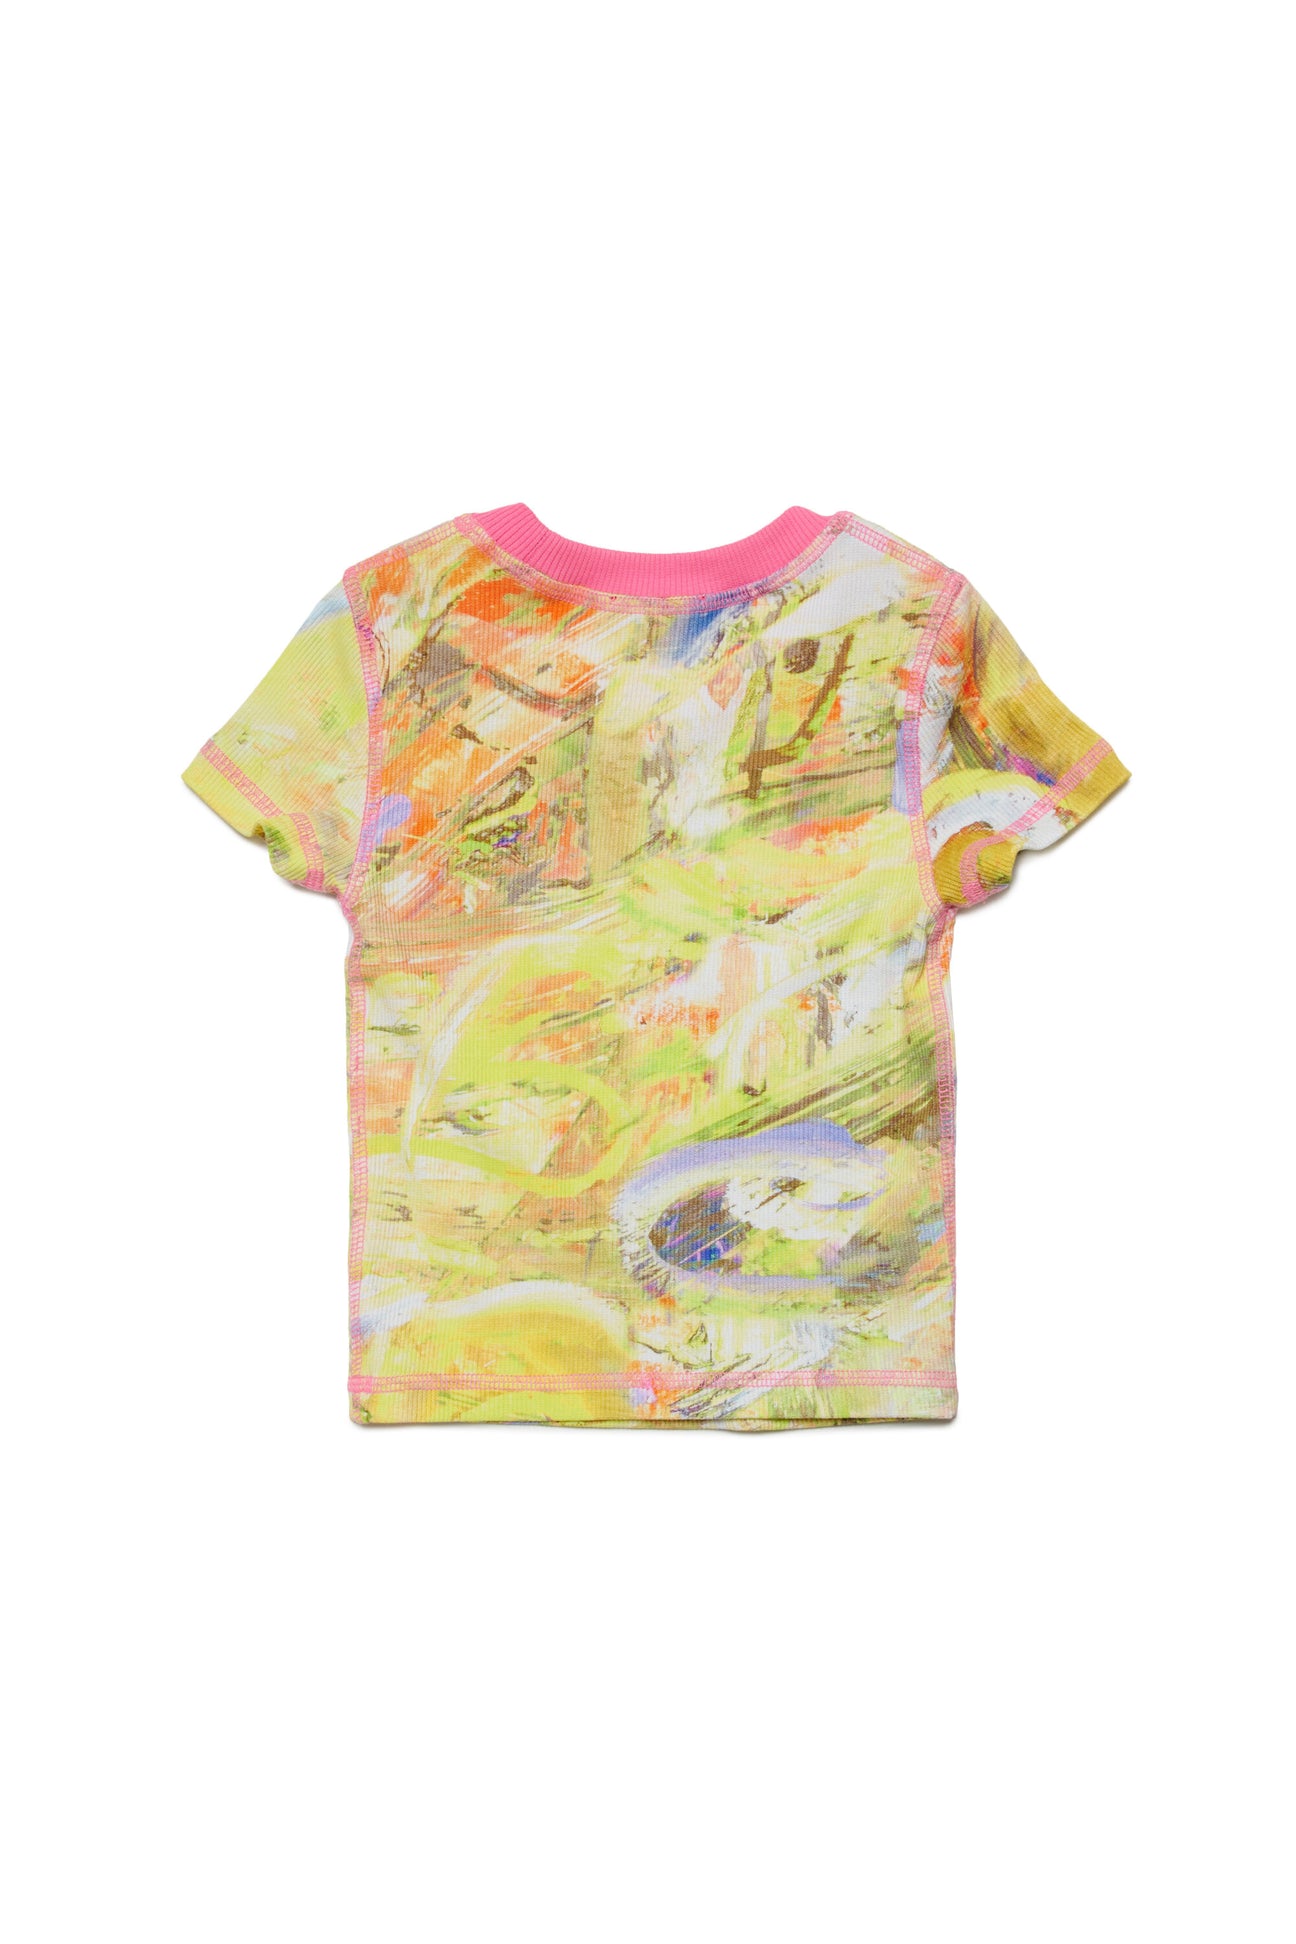 T-shirt allover abstract T-shirt allover abstract